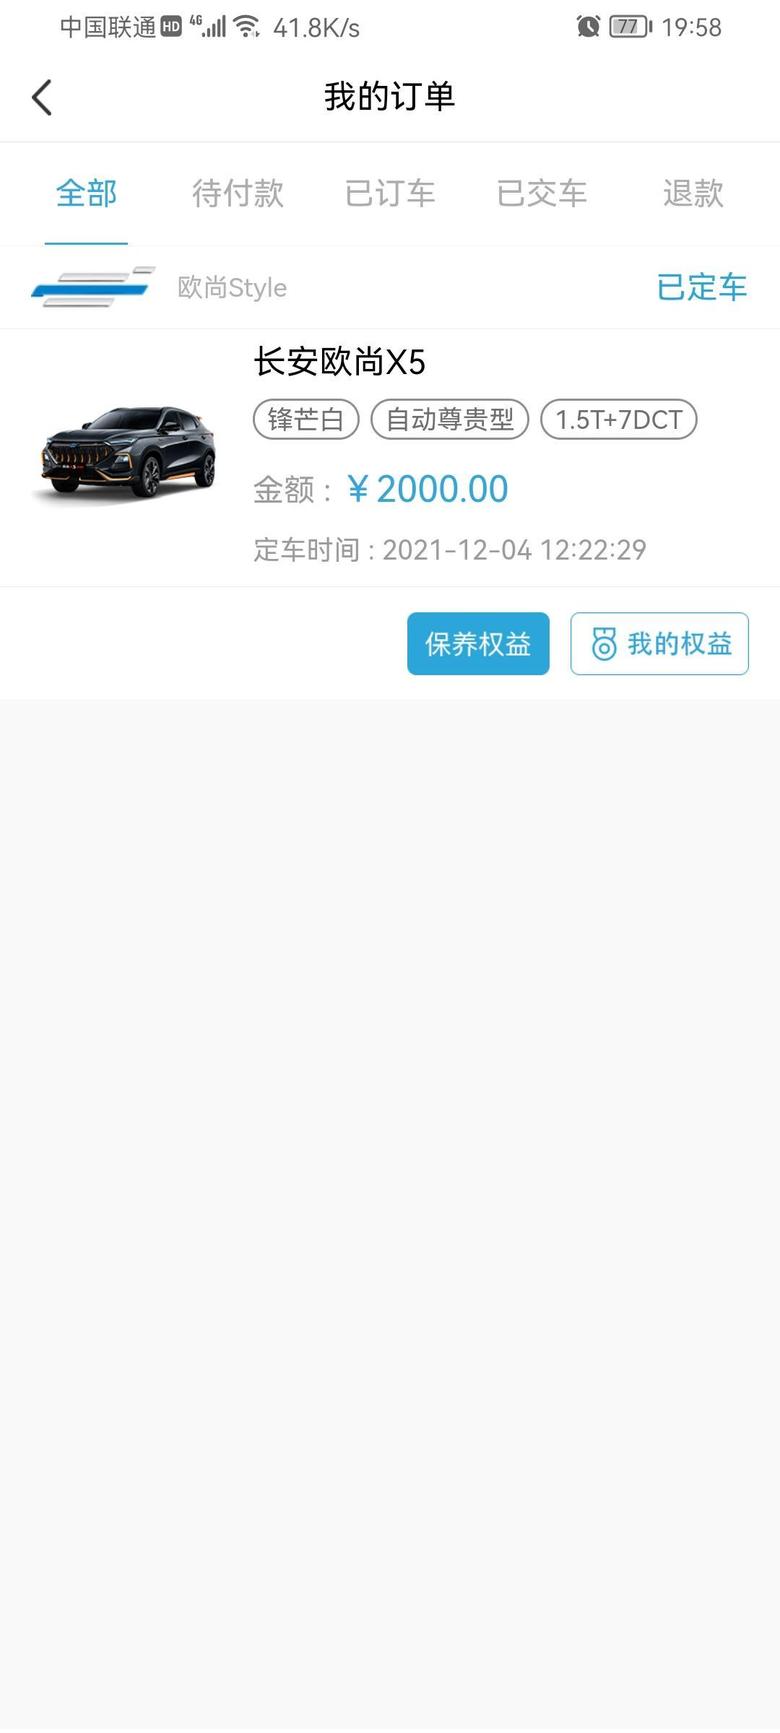 长安欧尚x5 落地10.5，贷款5万，中规中矩的价格，销售说要2周左右到车，大家都是多久拿到的